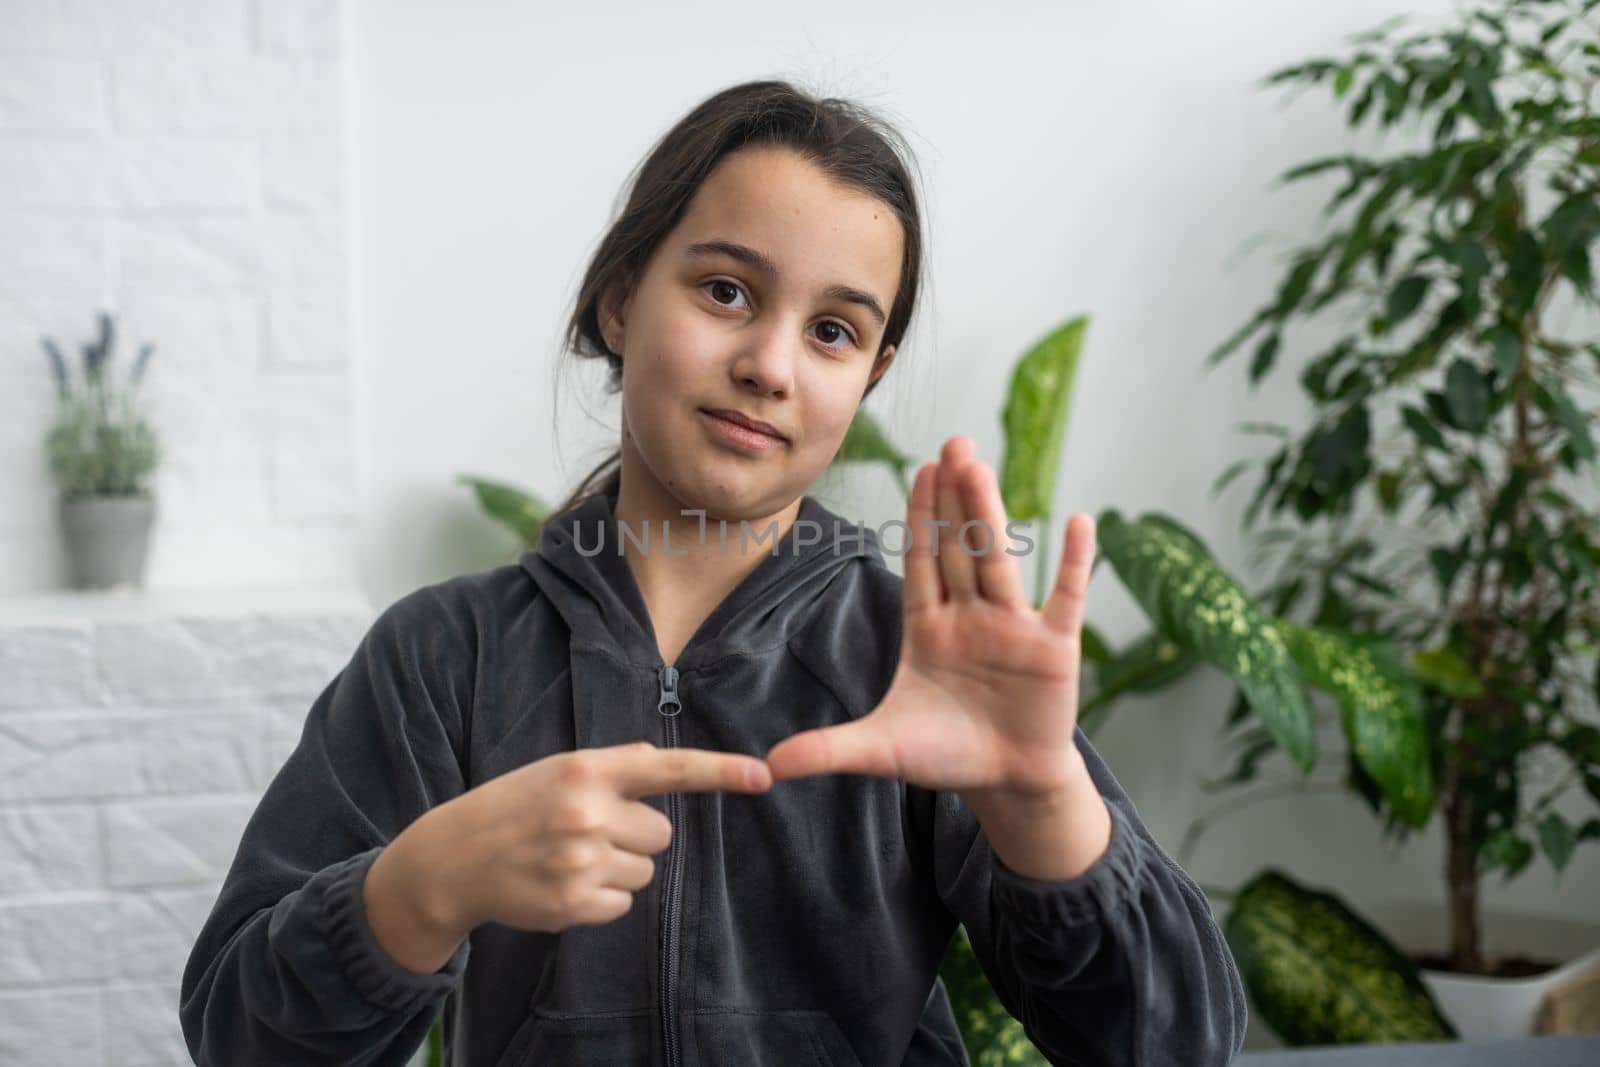 A smiley teenage girl hand sign.